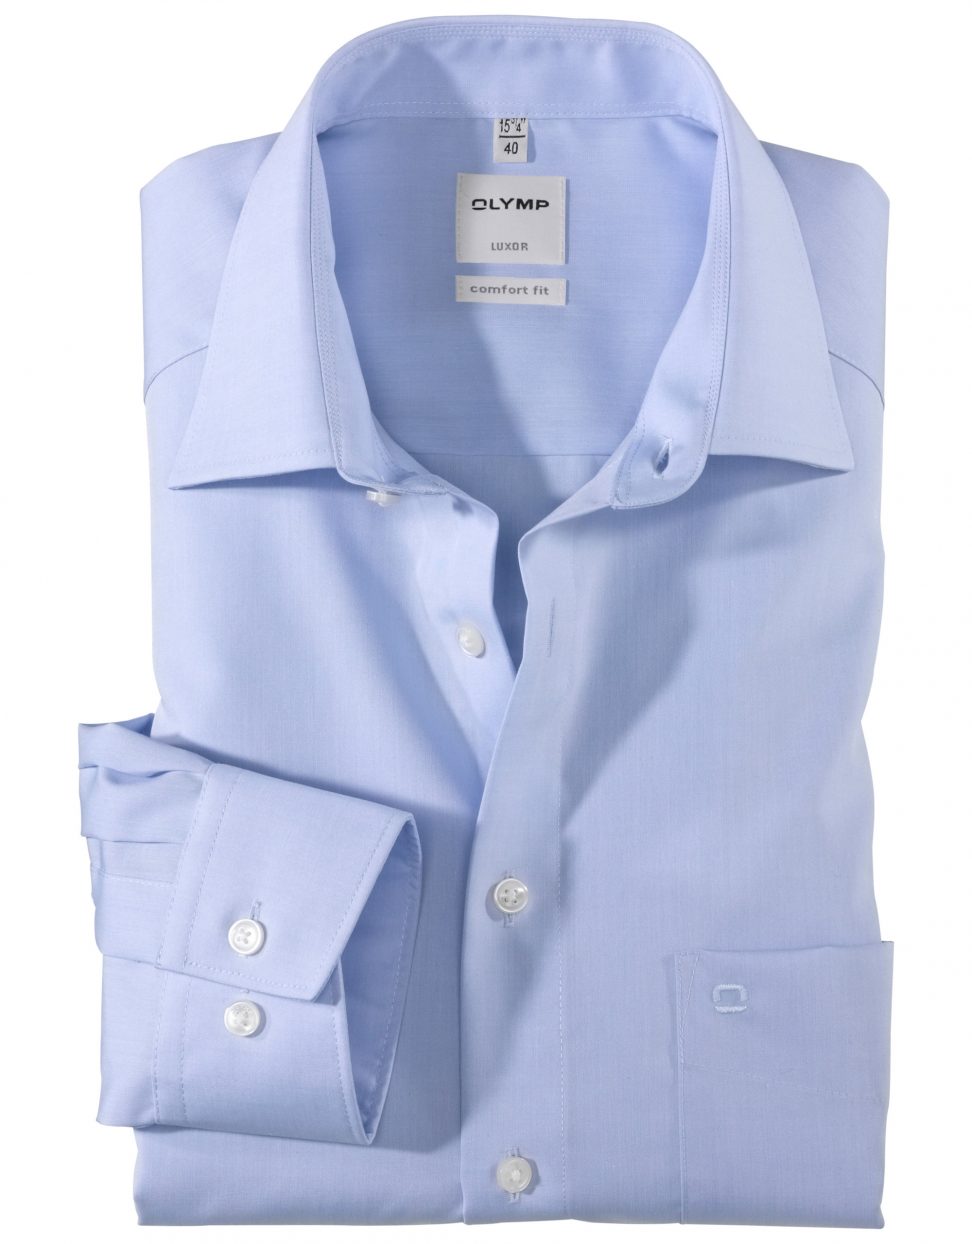 Koszula OLYMP Luxor comfort fit / bleu / New Kent / 51316411